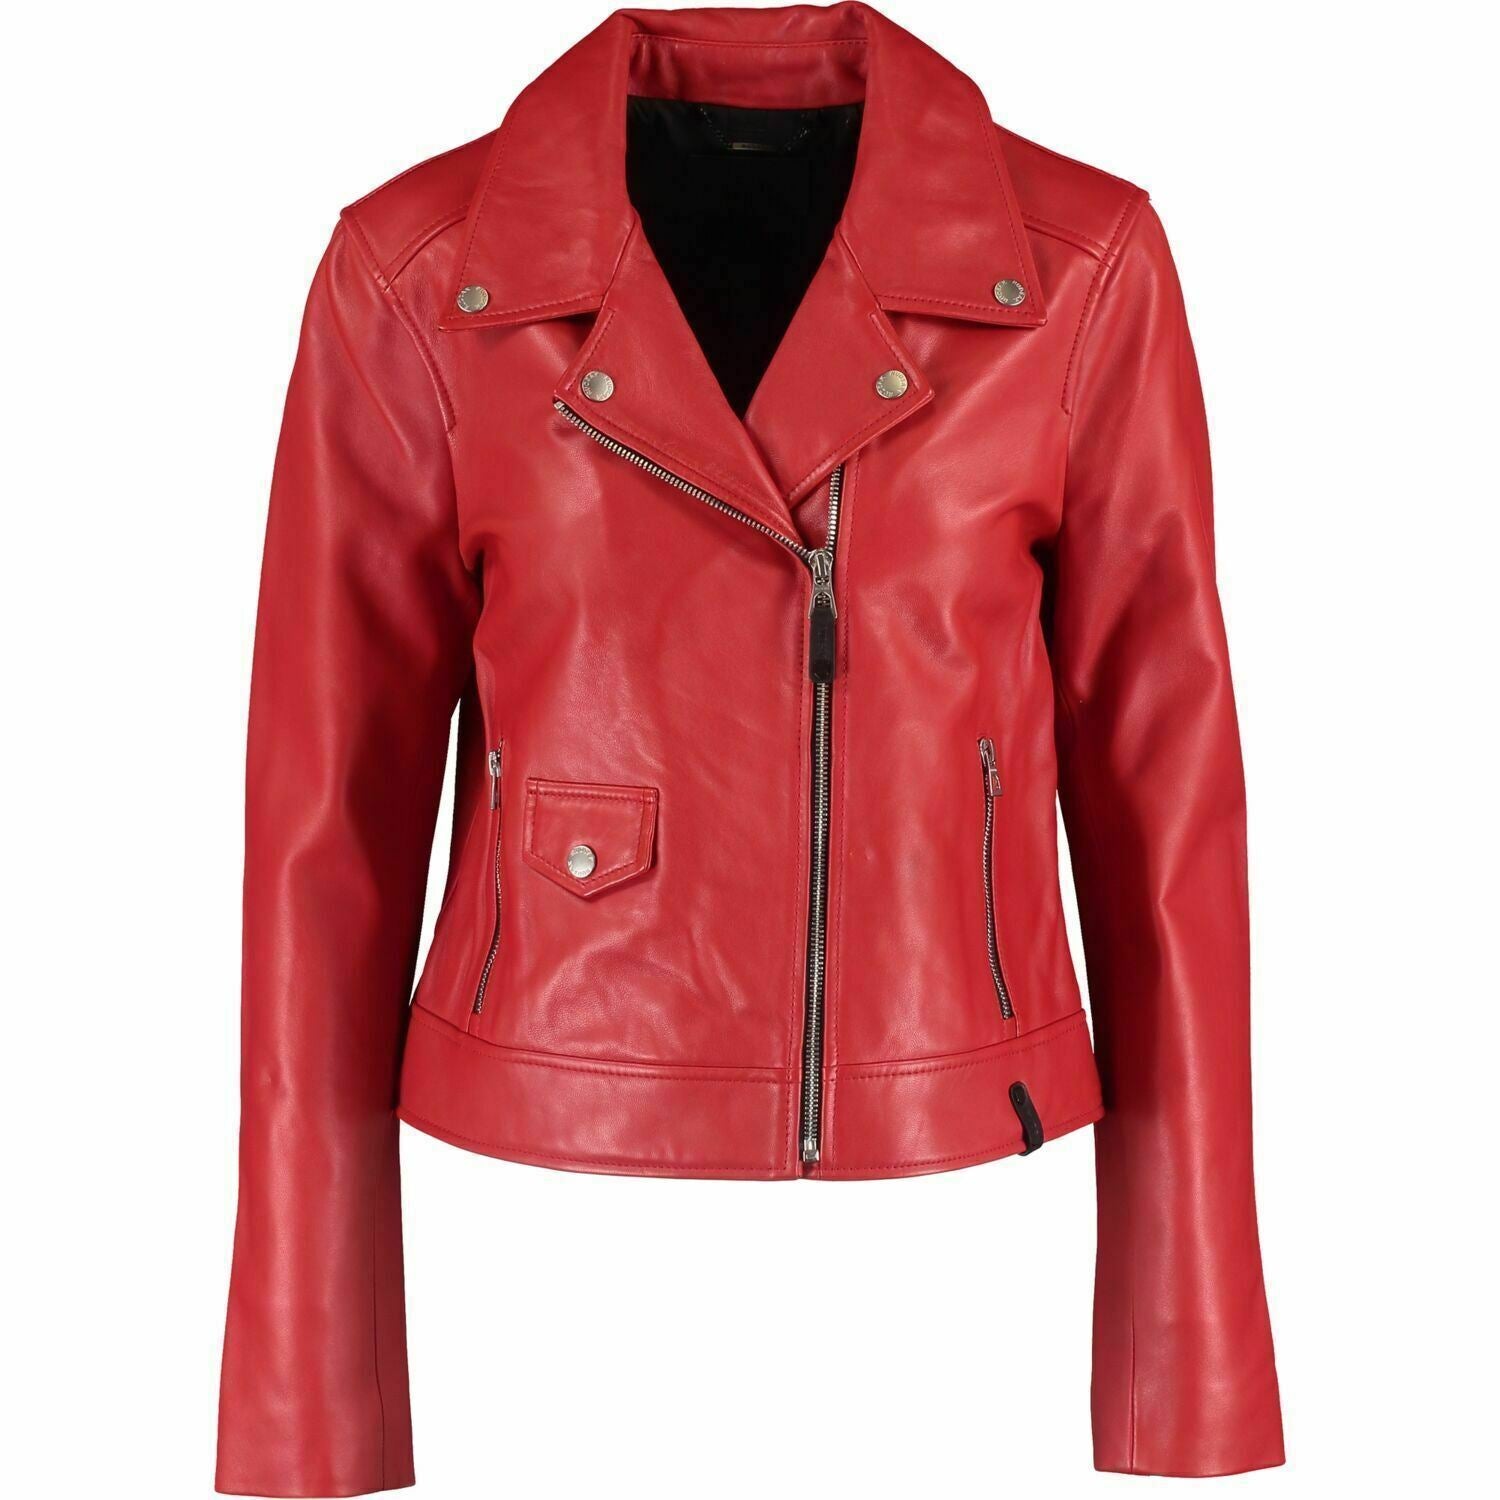 RUDSAK - MAHIRA Women's Red Genuine Leather Biker Jacket, size XS